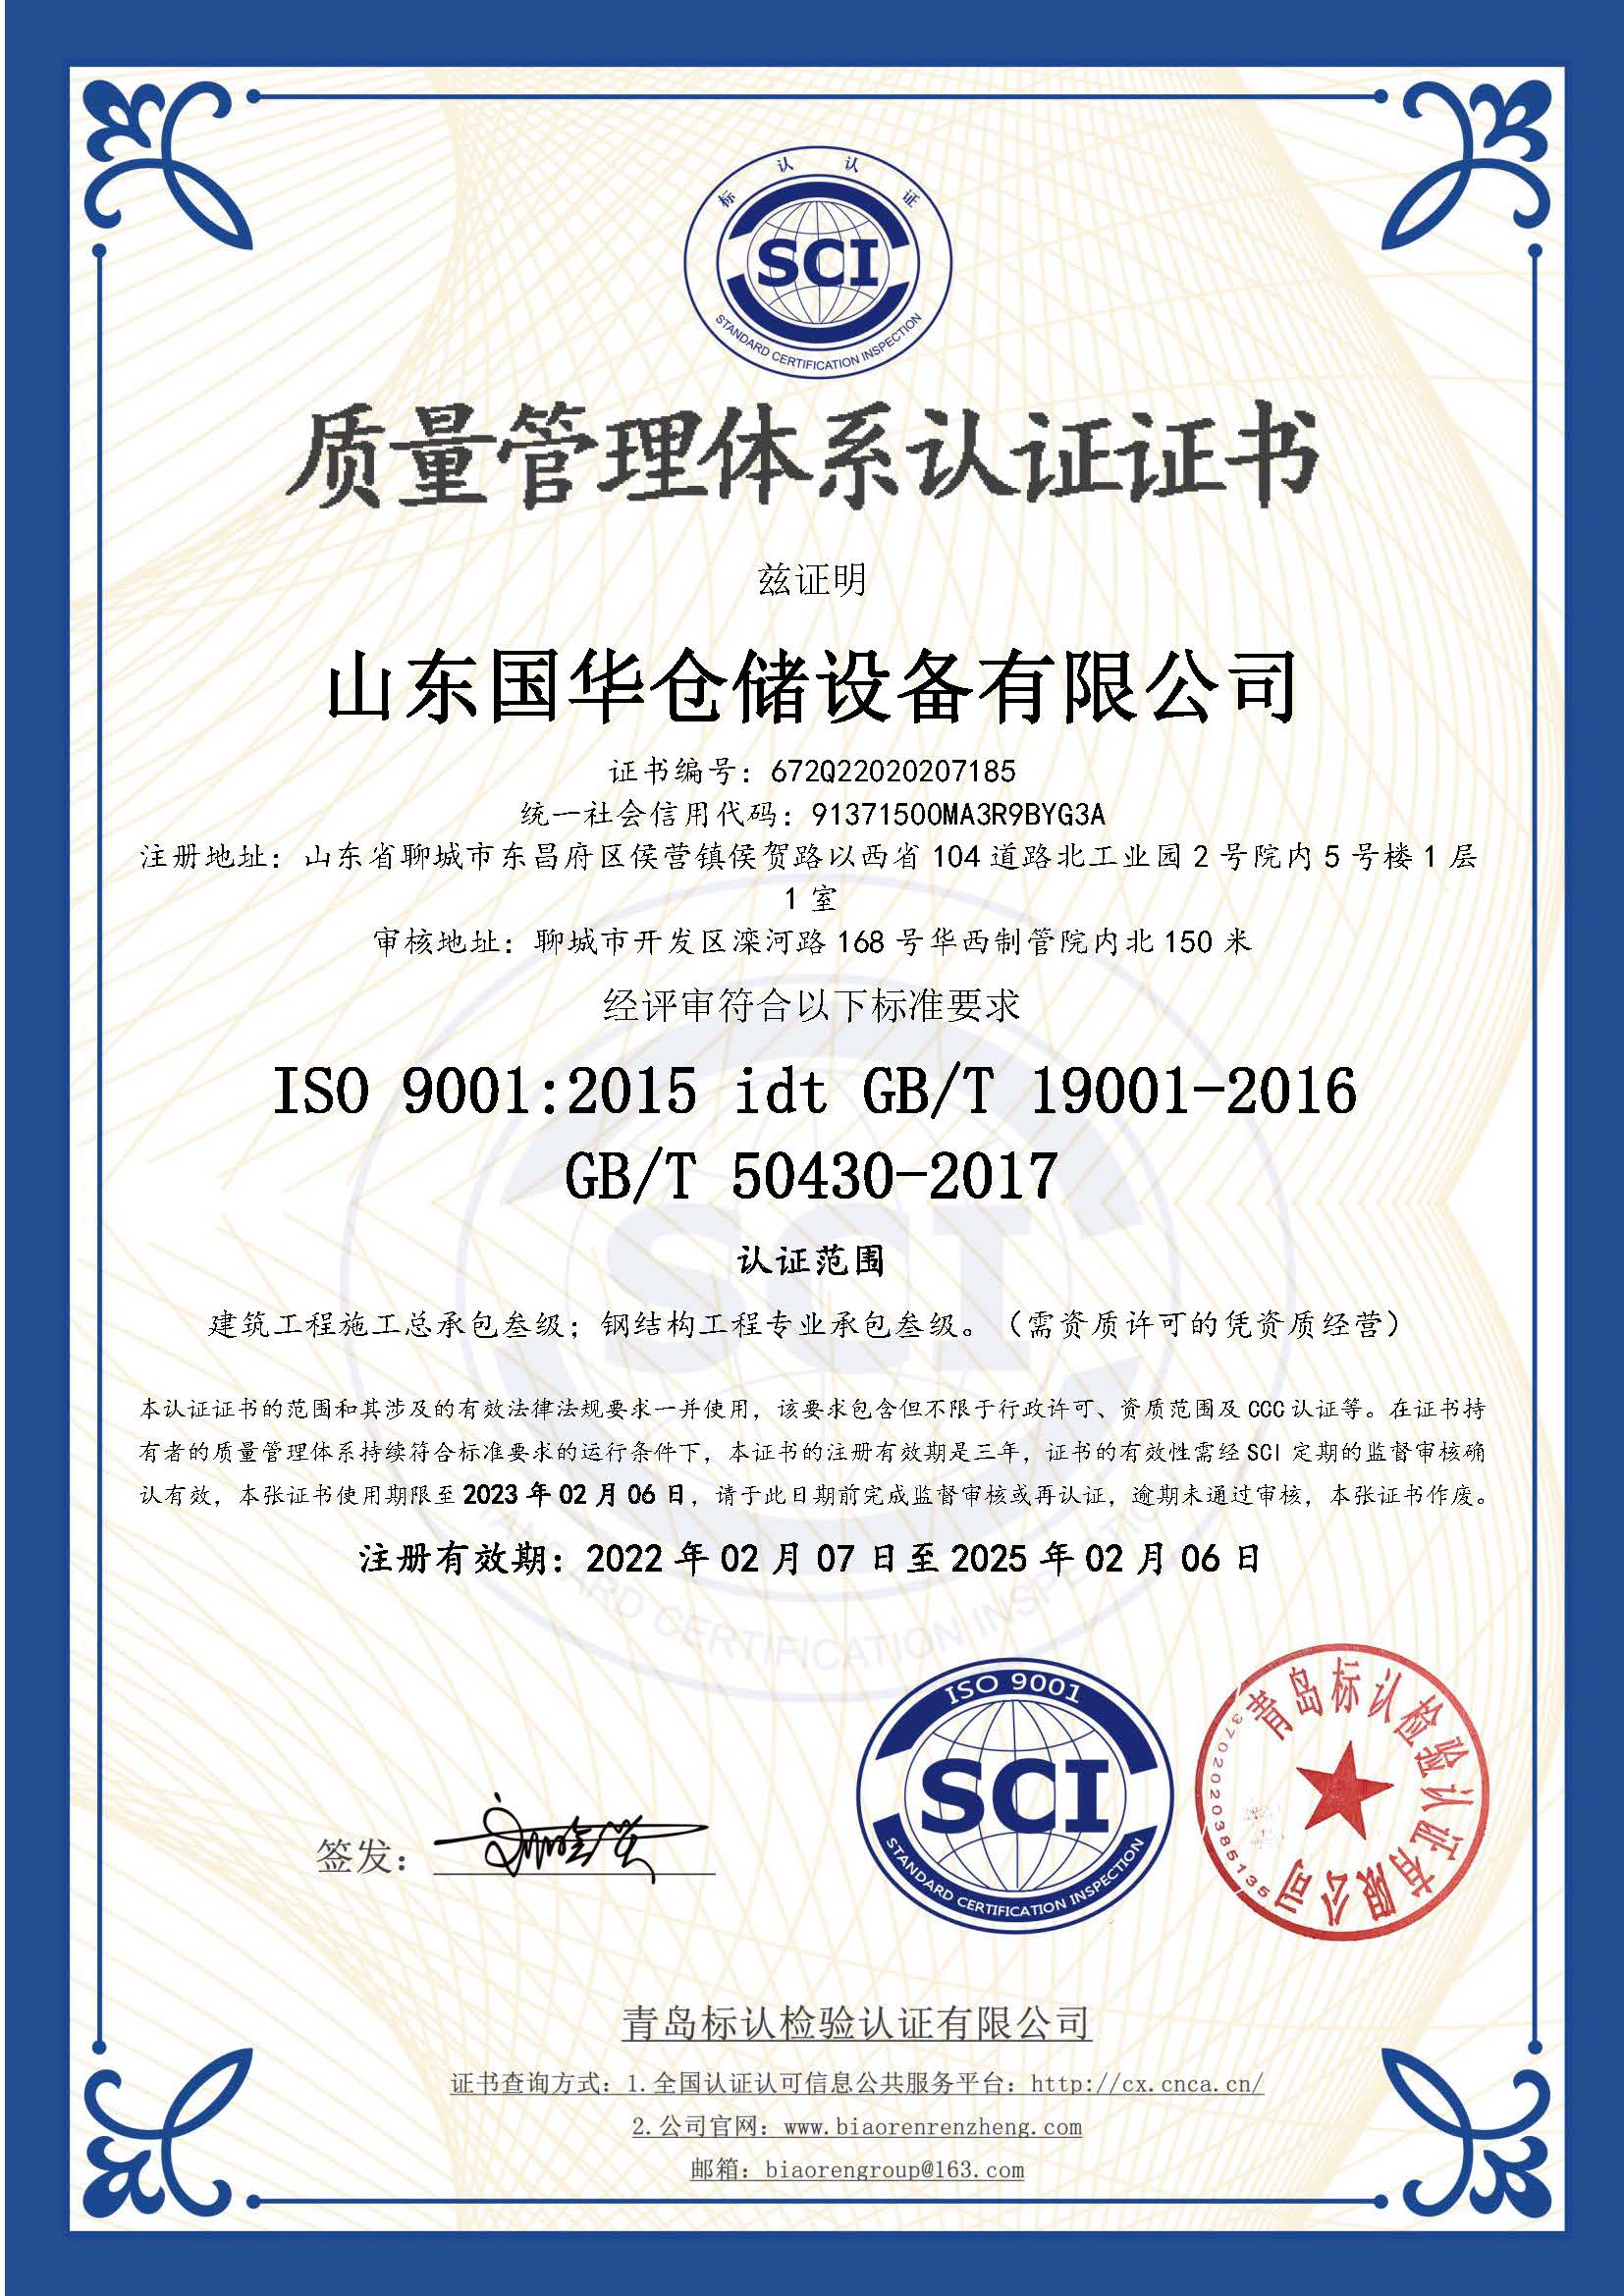 柳州钢板仓ISO质量体系认证证书